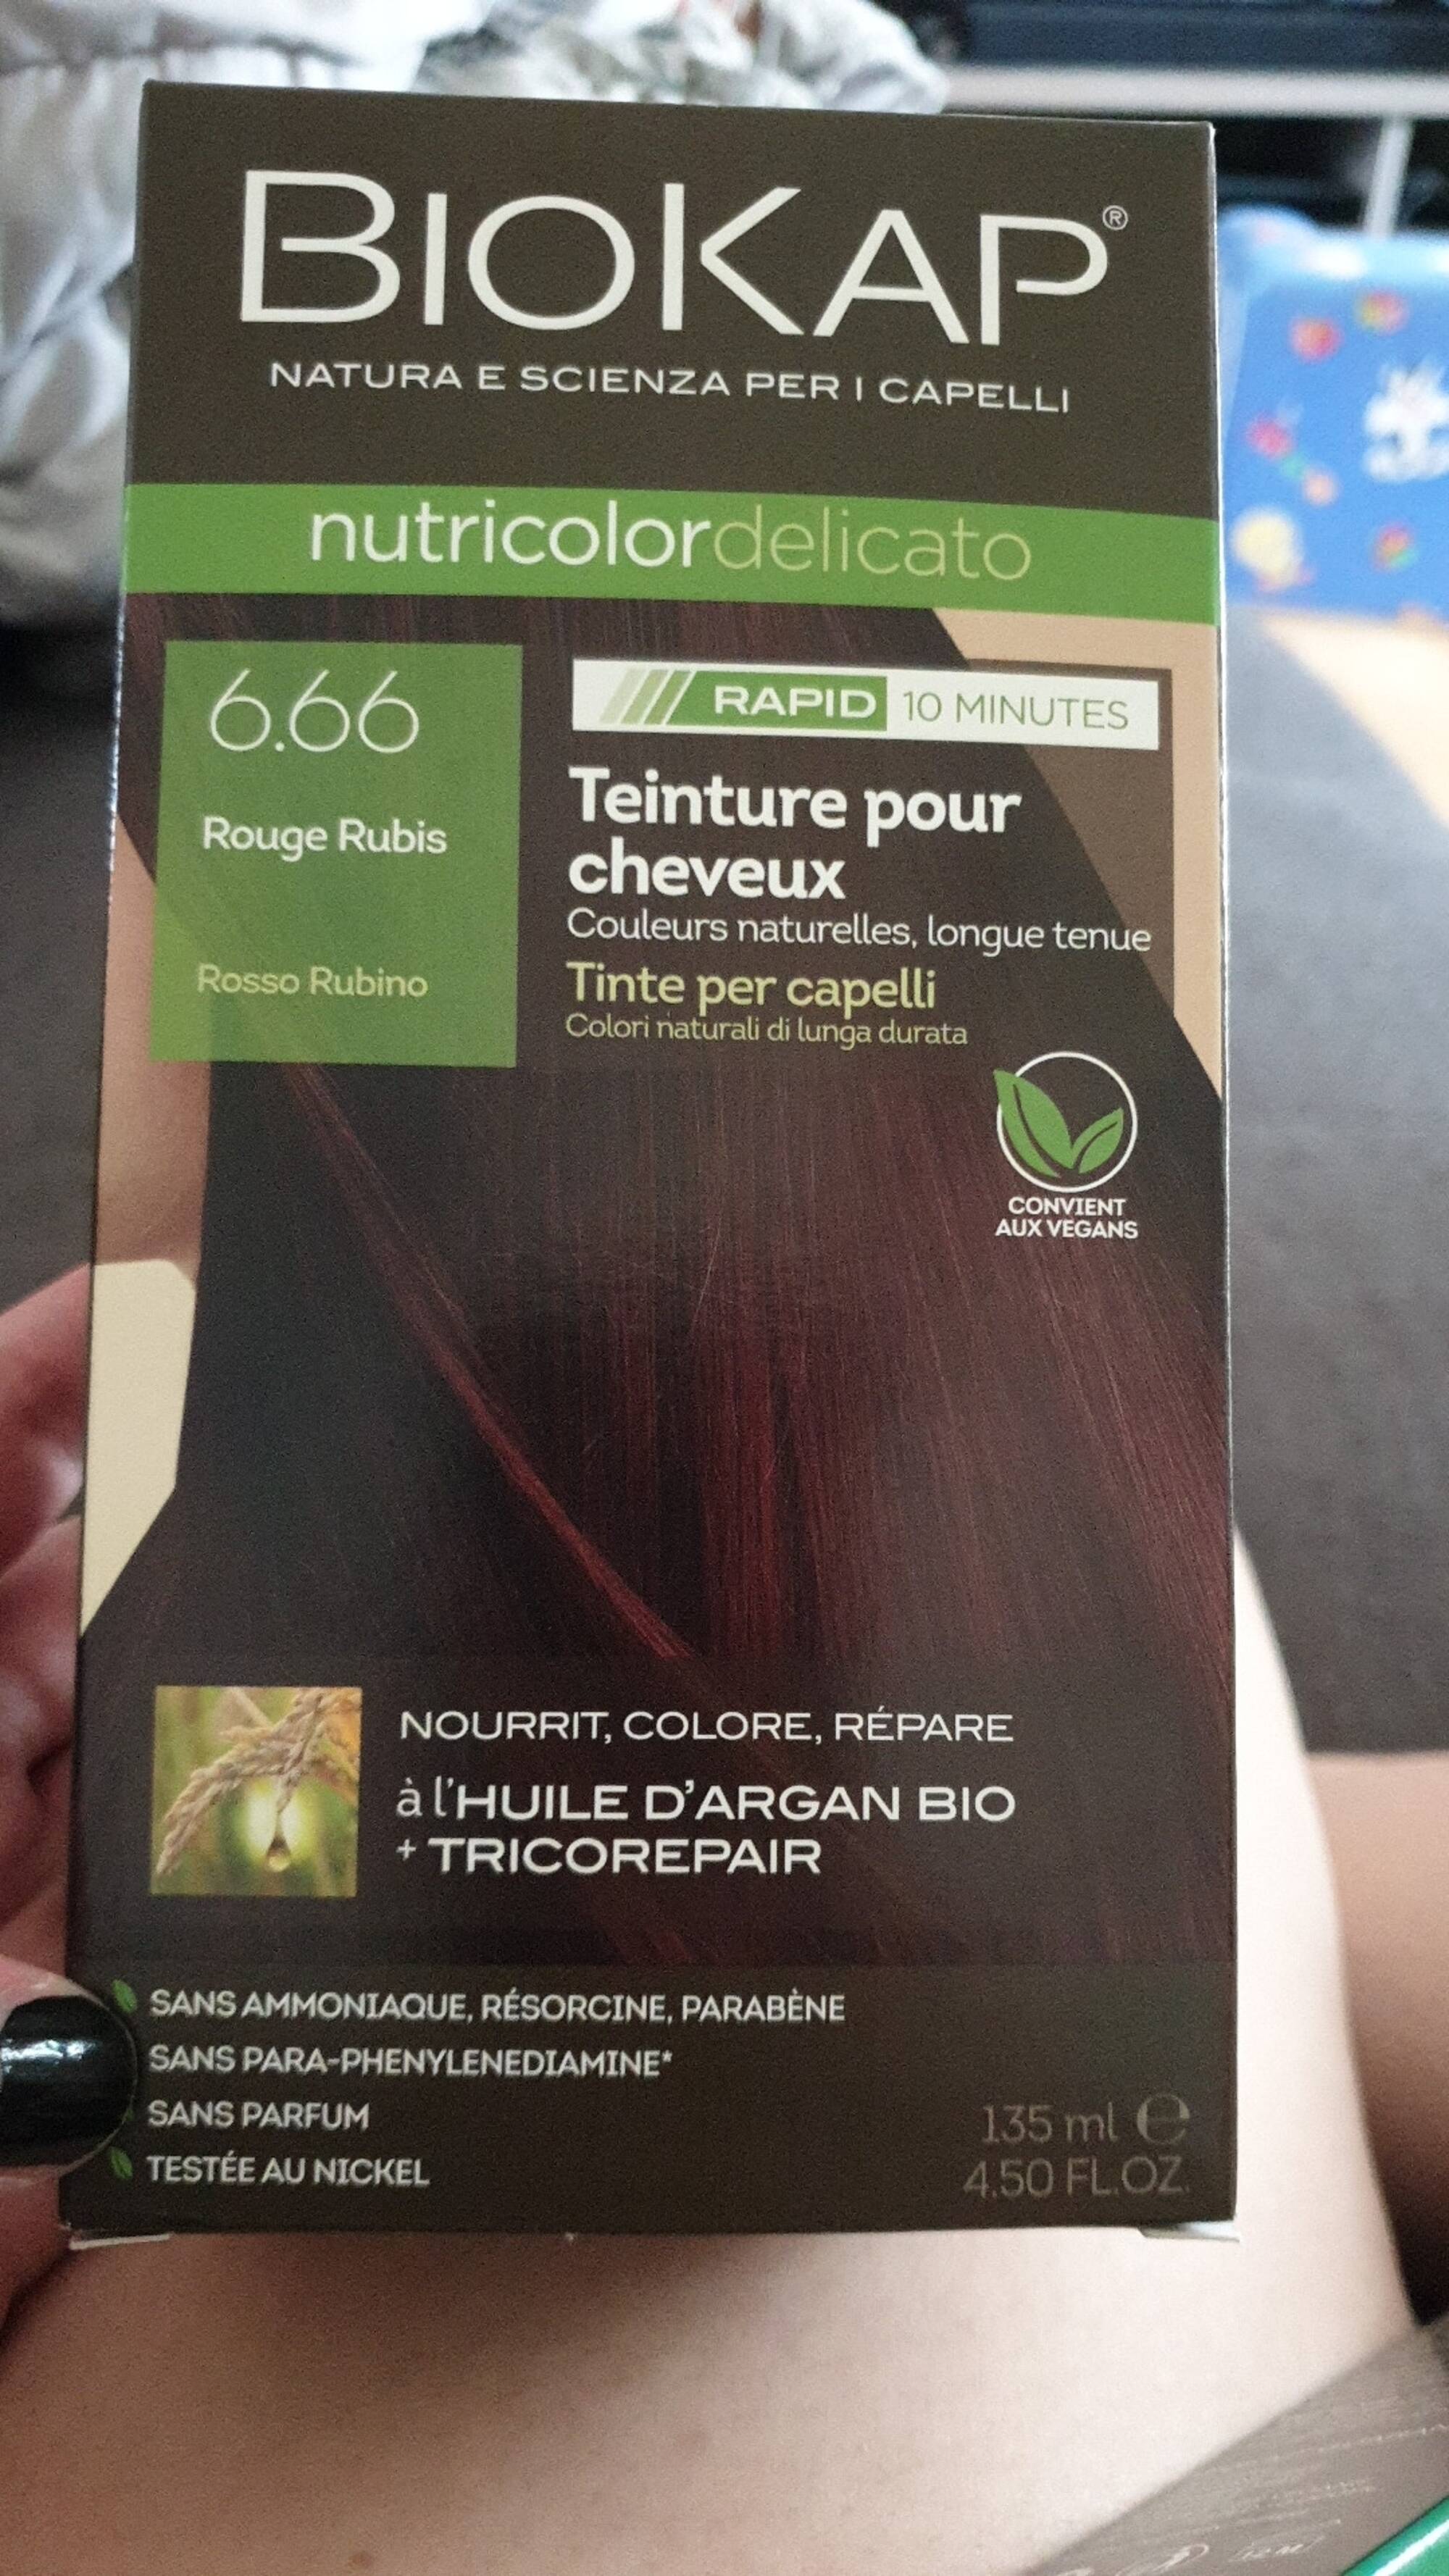 BIOKAP - Nutricolor delicato - Teinture pour cheveux 6.66 rouge rubis